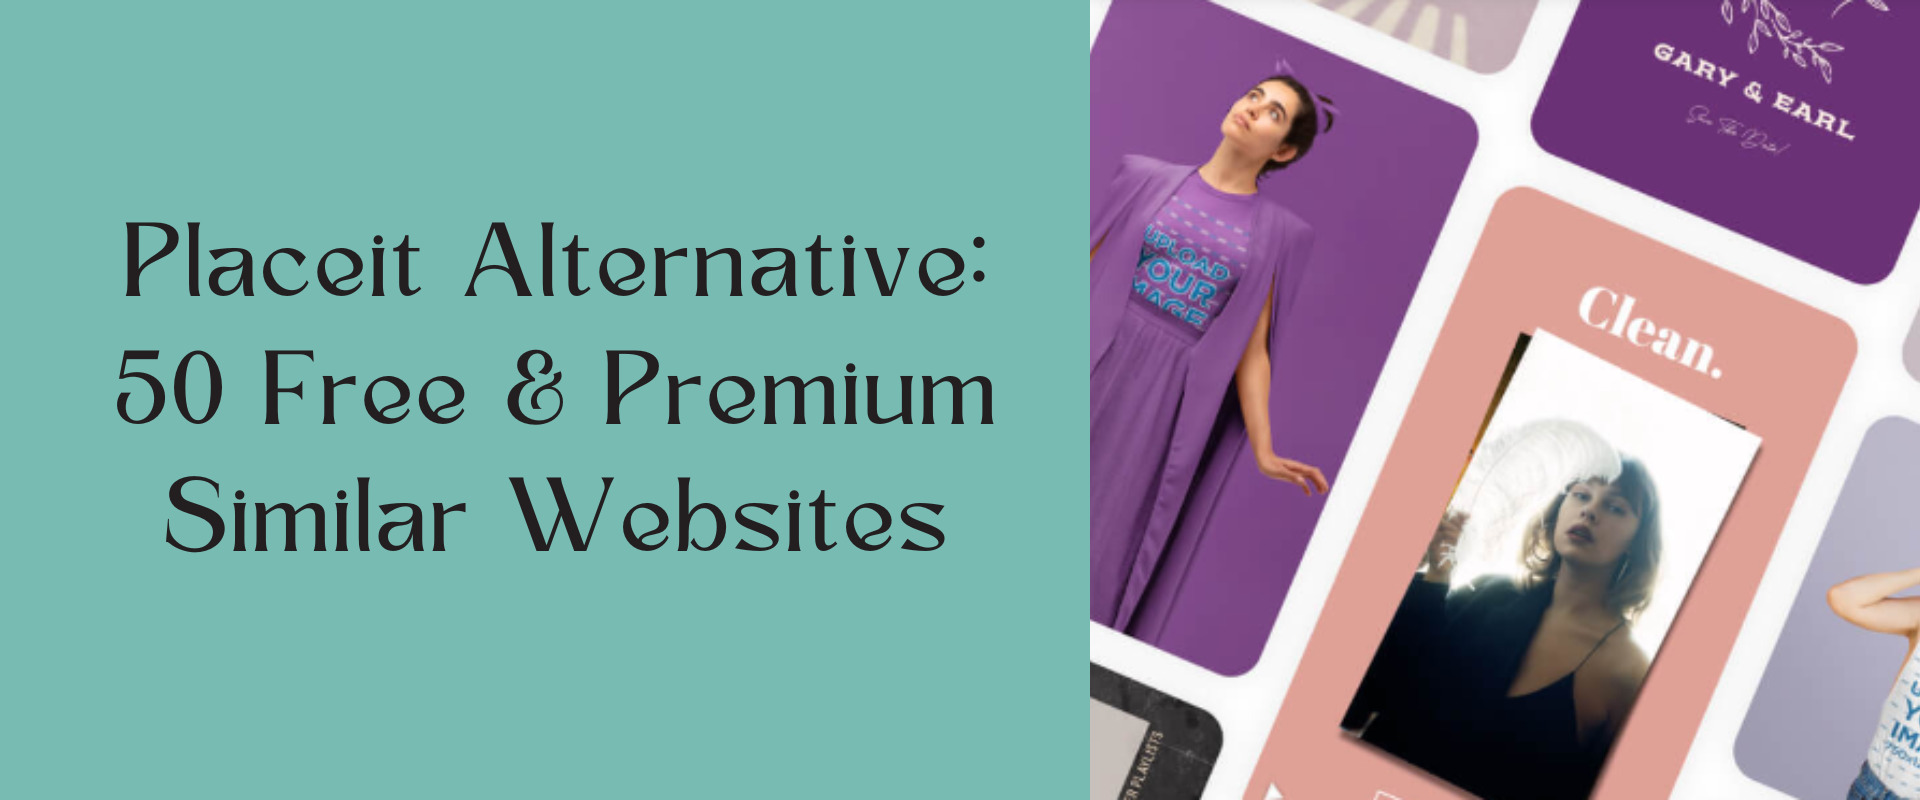 Placeit Alternative: 50 Free & Premium Similar Websites